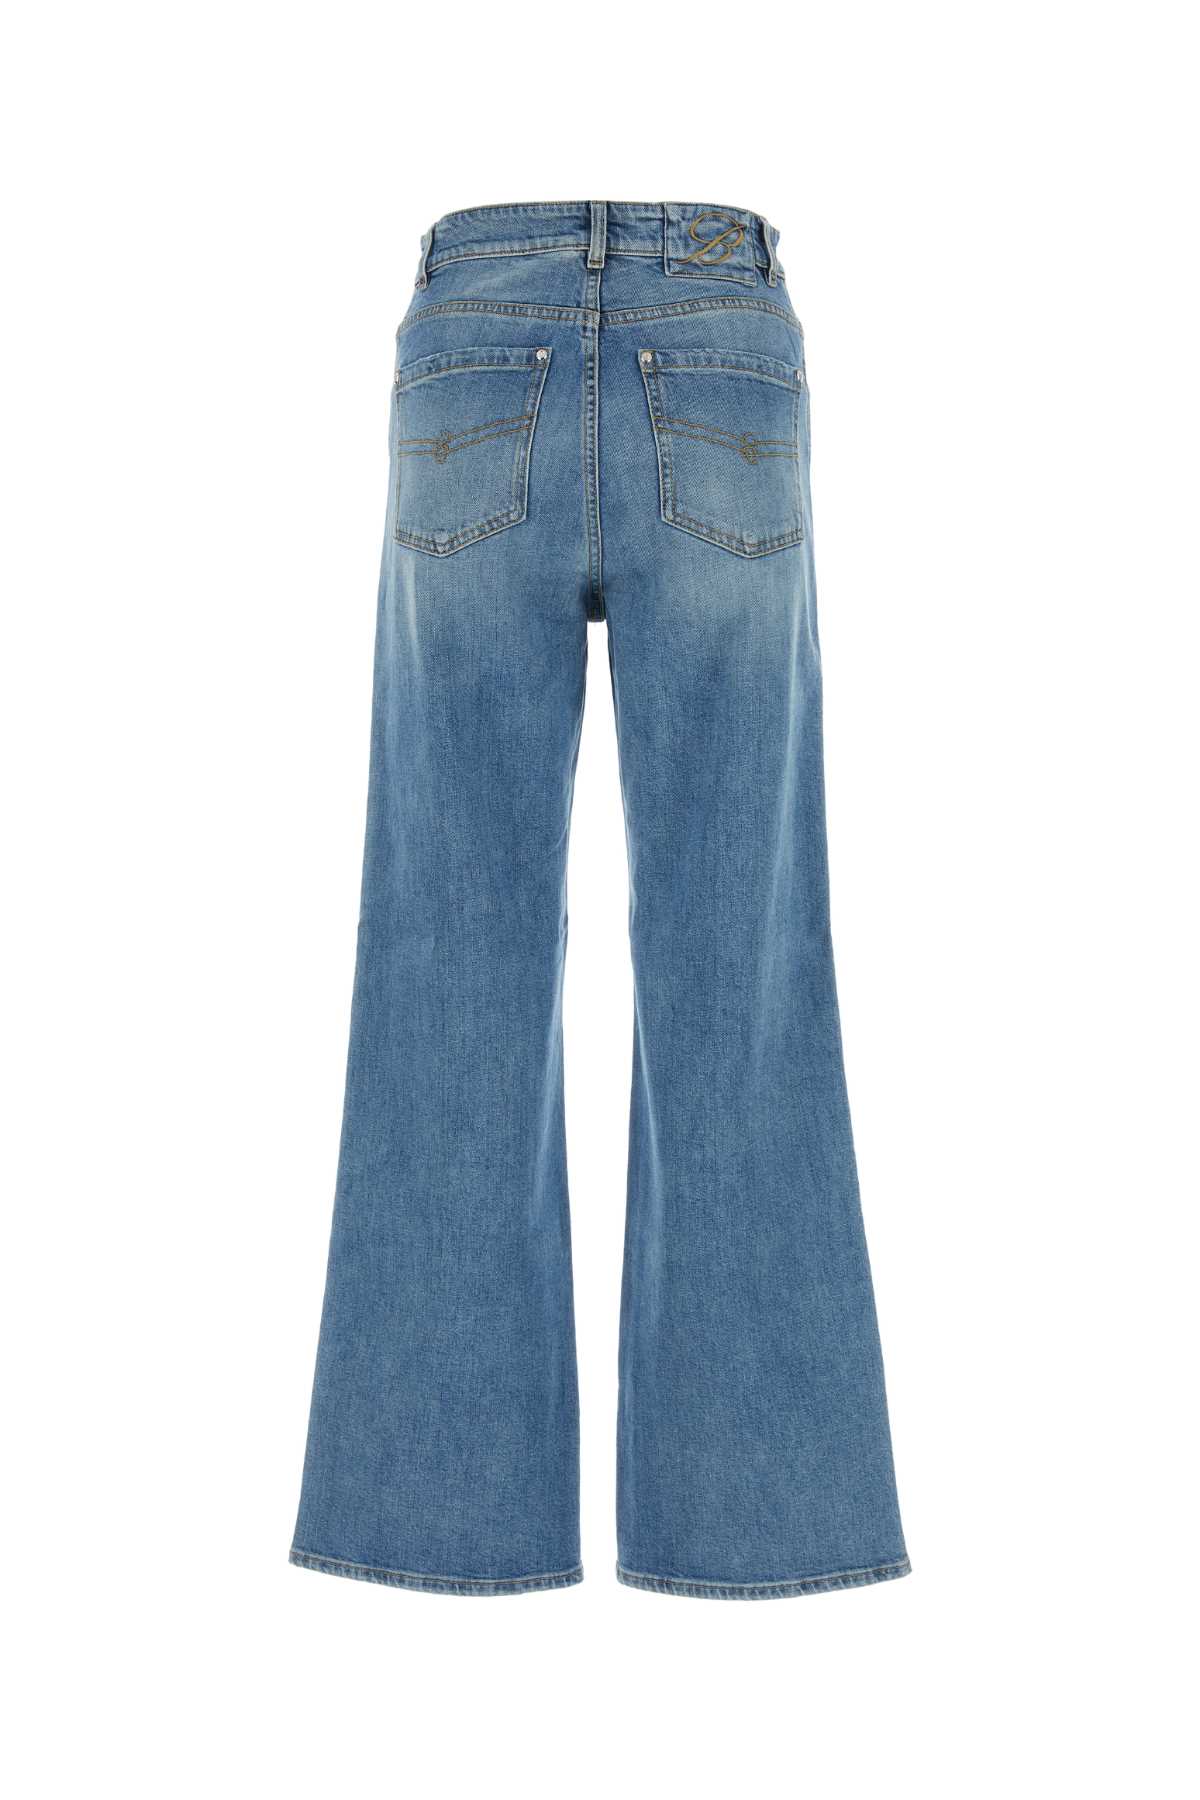 Blumarine Stretch Denim Jeans In Allure